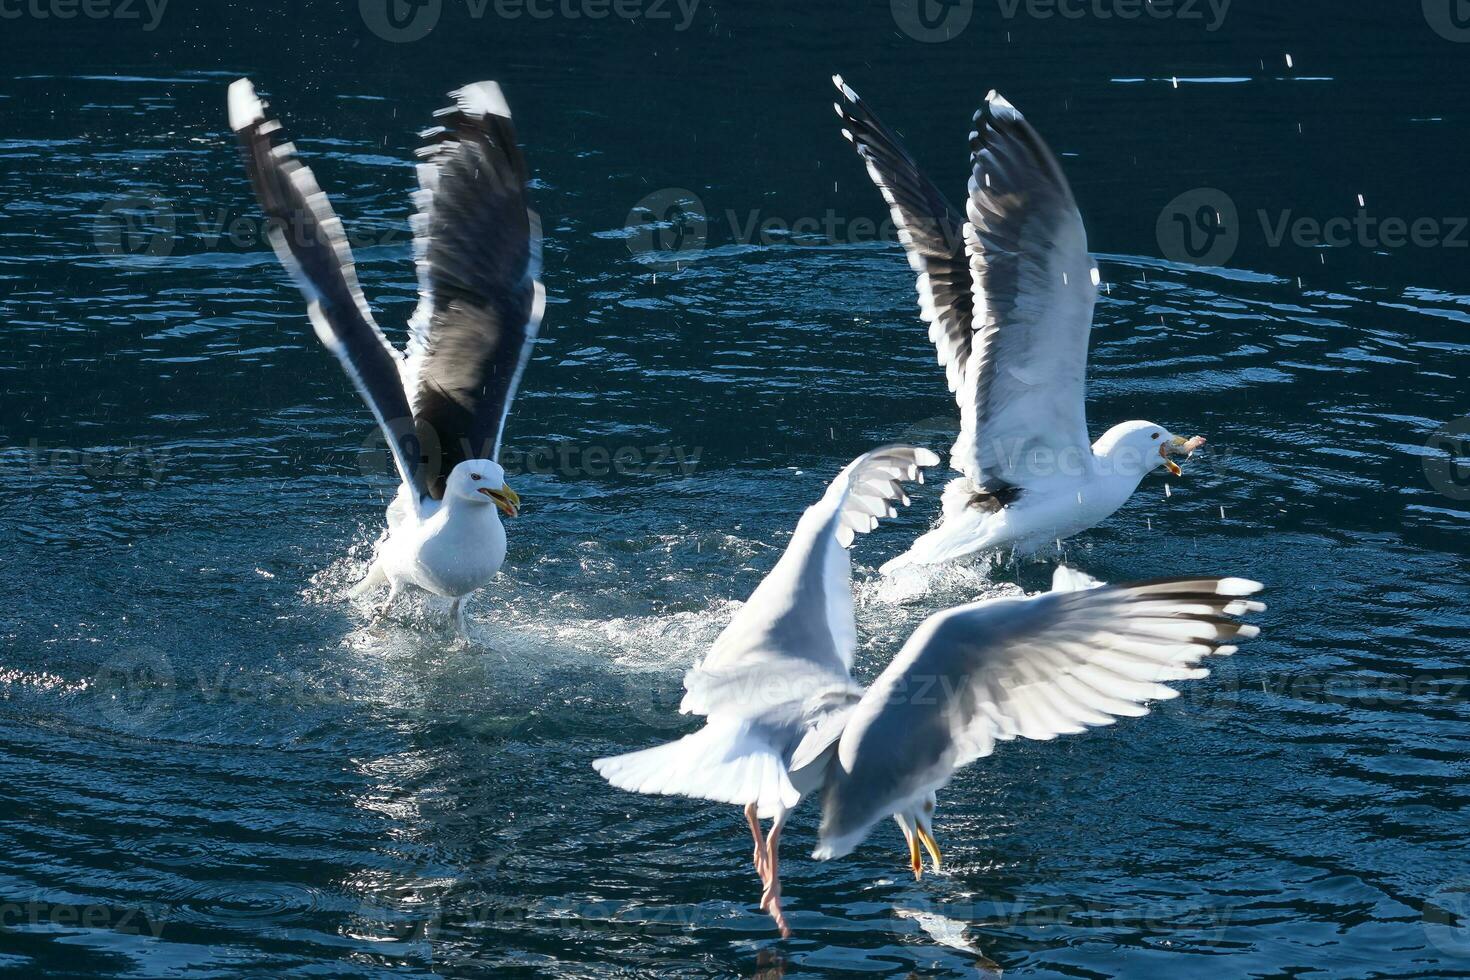 gaivotas luta sobre Comida dentro Noruega. água gotas splash. alimentando inveja entre aves marinhas foto